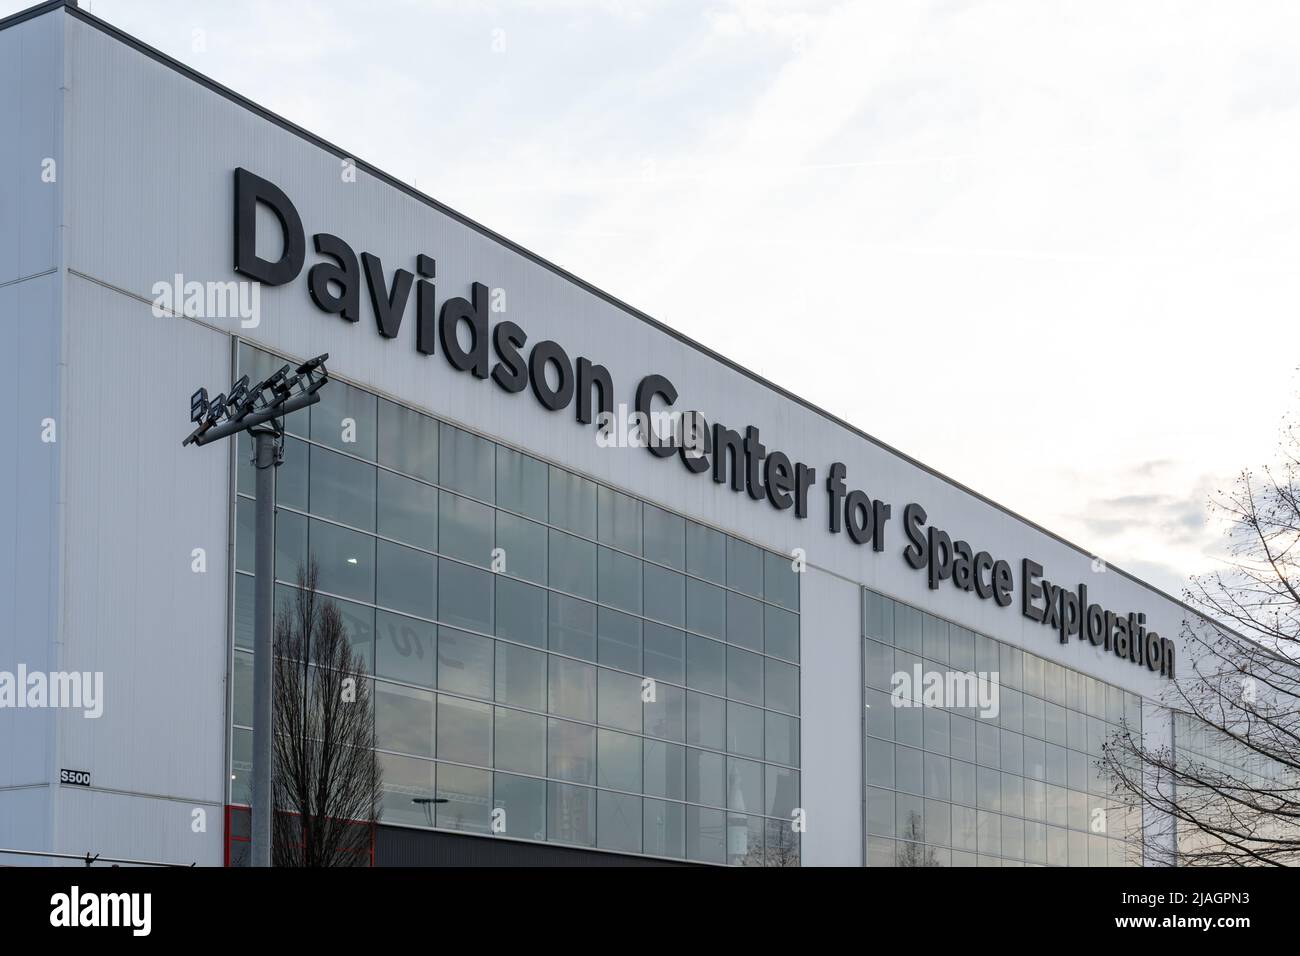 Huntsville, Alabama, États-Unis - 29 décembre 2021: Davidson Centre for Space exploration à Huntsville, Alabama, États-Unis Banque D'Images